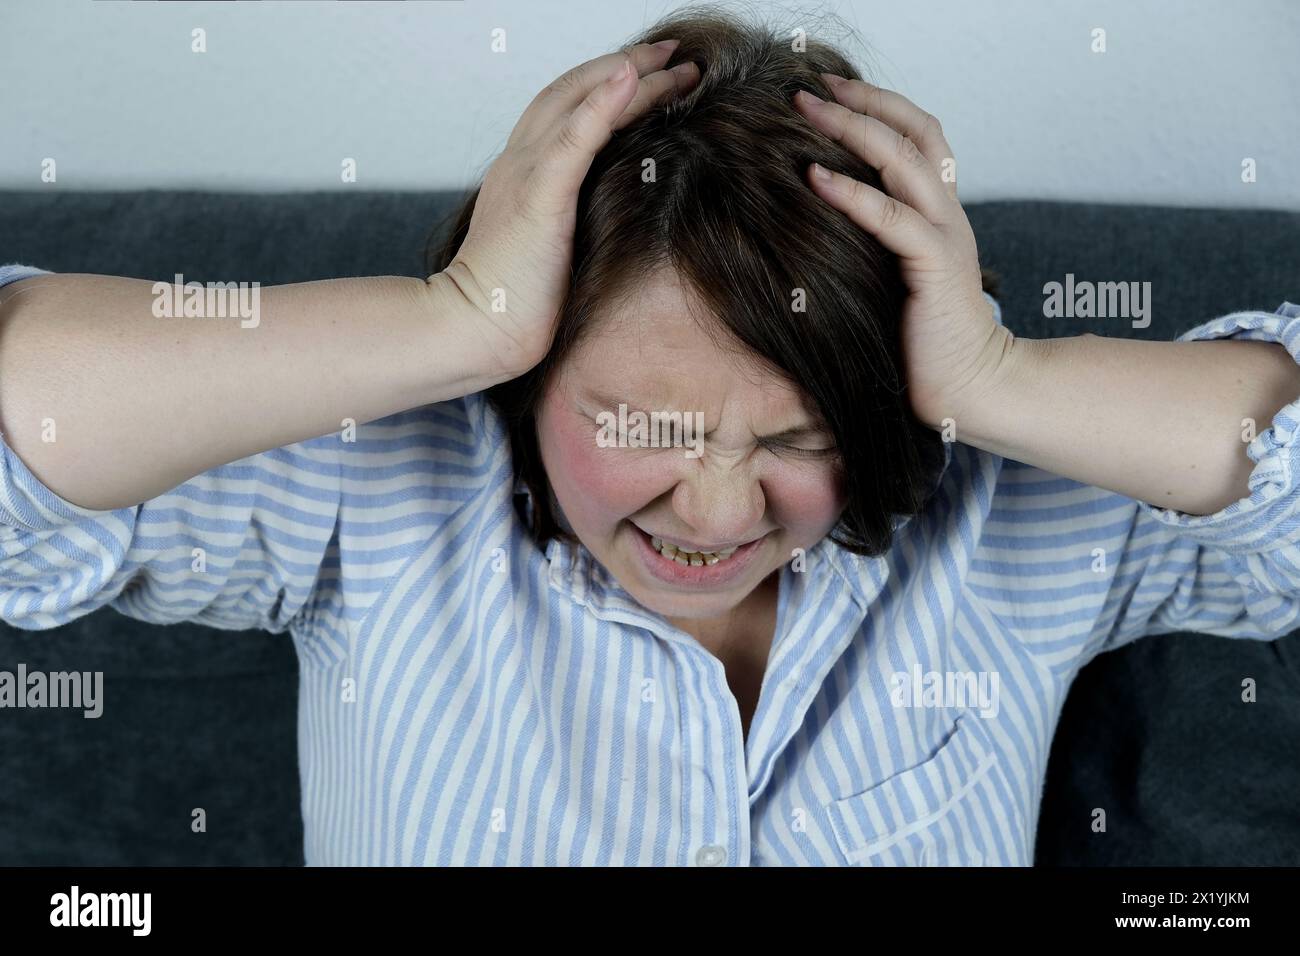 Erwachsene Frau sitzt auf einem Sofa, bedeckt mit einer Decke, klammert ihren Kopf in die Hände, Grimasse des Leidens im Gesicht, das Konzept des Migräneanfalls, p Stockfoto